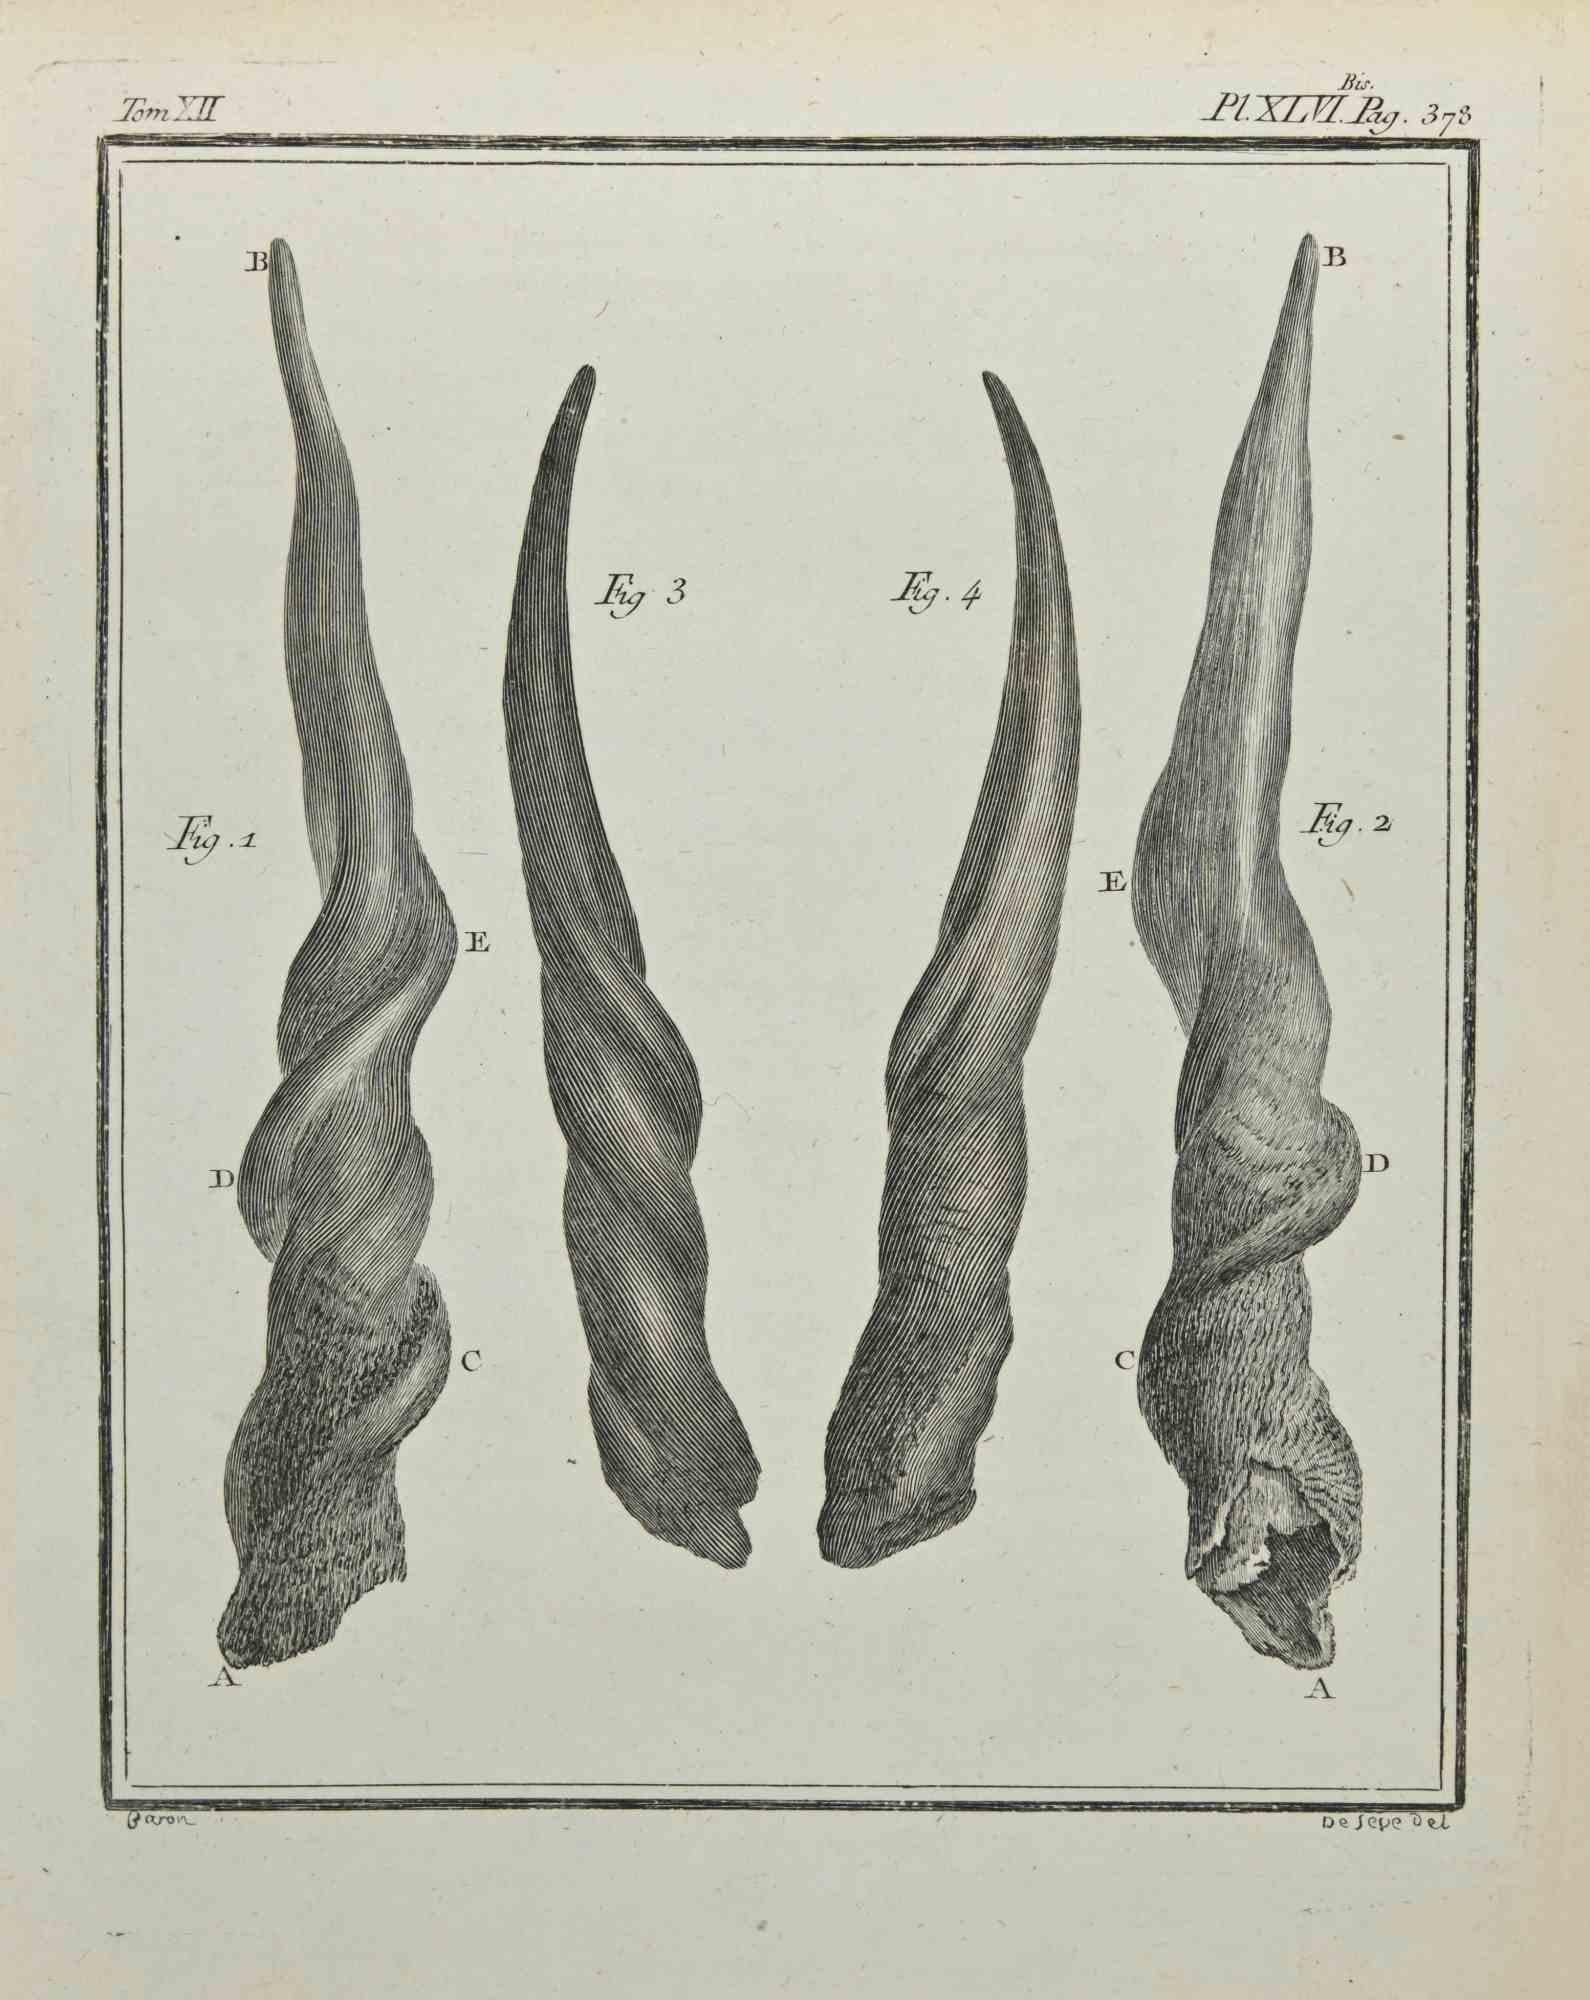 Jacques de Seve Animal Print - Horns - Etching by Jacques De Sève - 1771